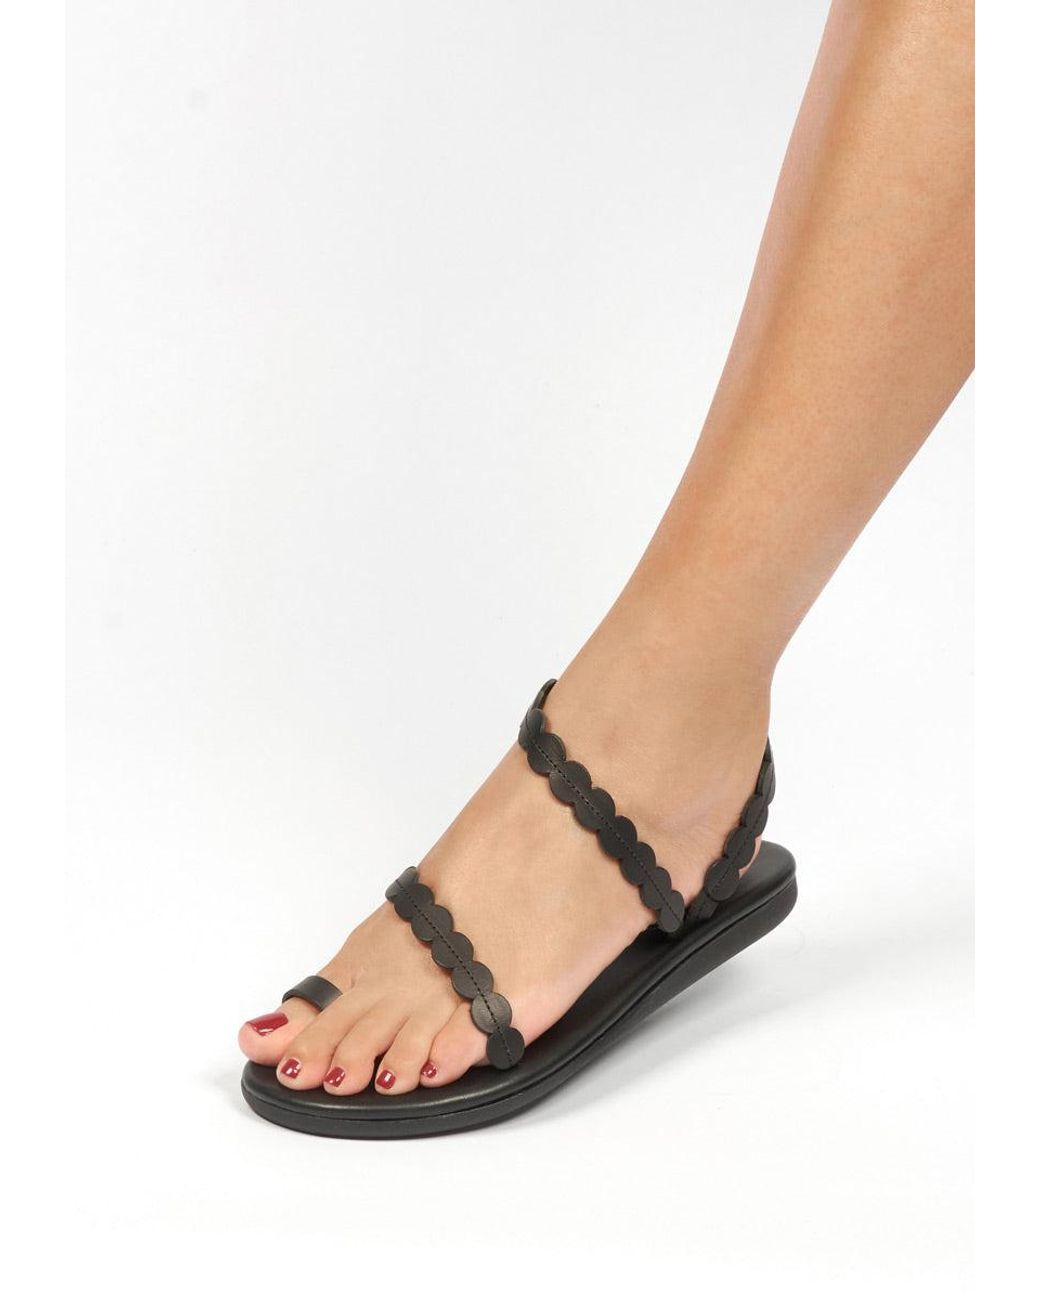 39644円 ついに再販開始 アンシエントグリークサンダル レディース サンダル シューズ Women's Eleftheria Sandals Natural